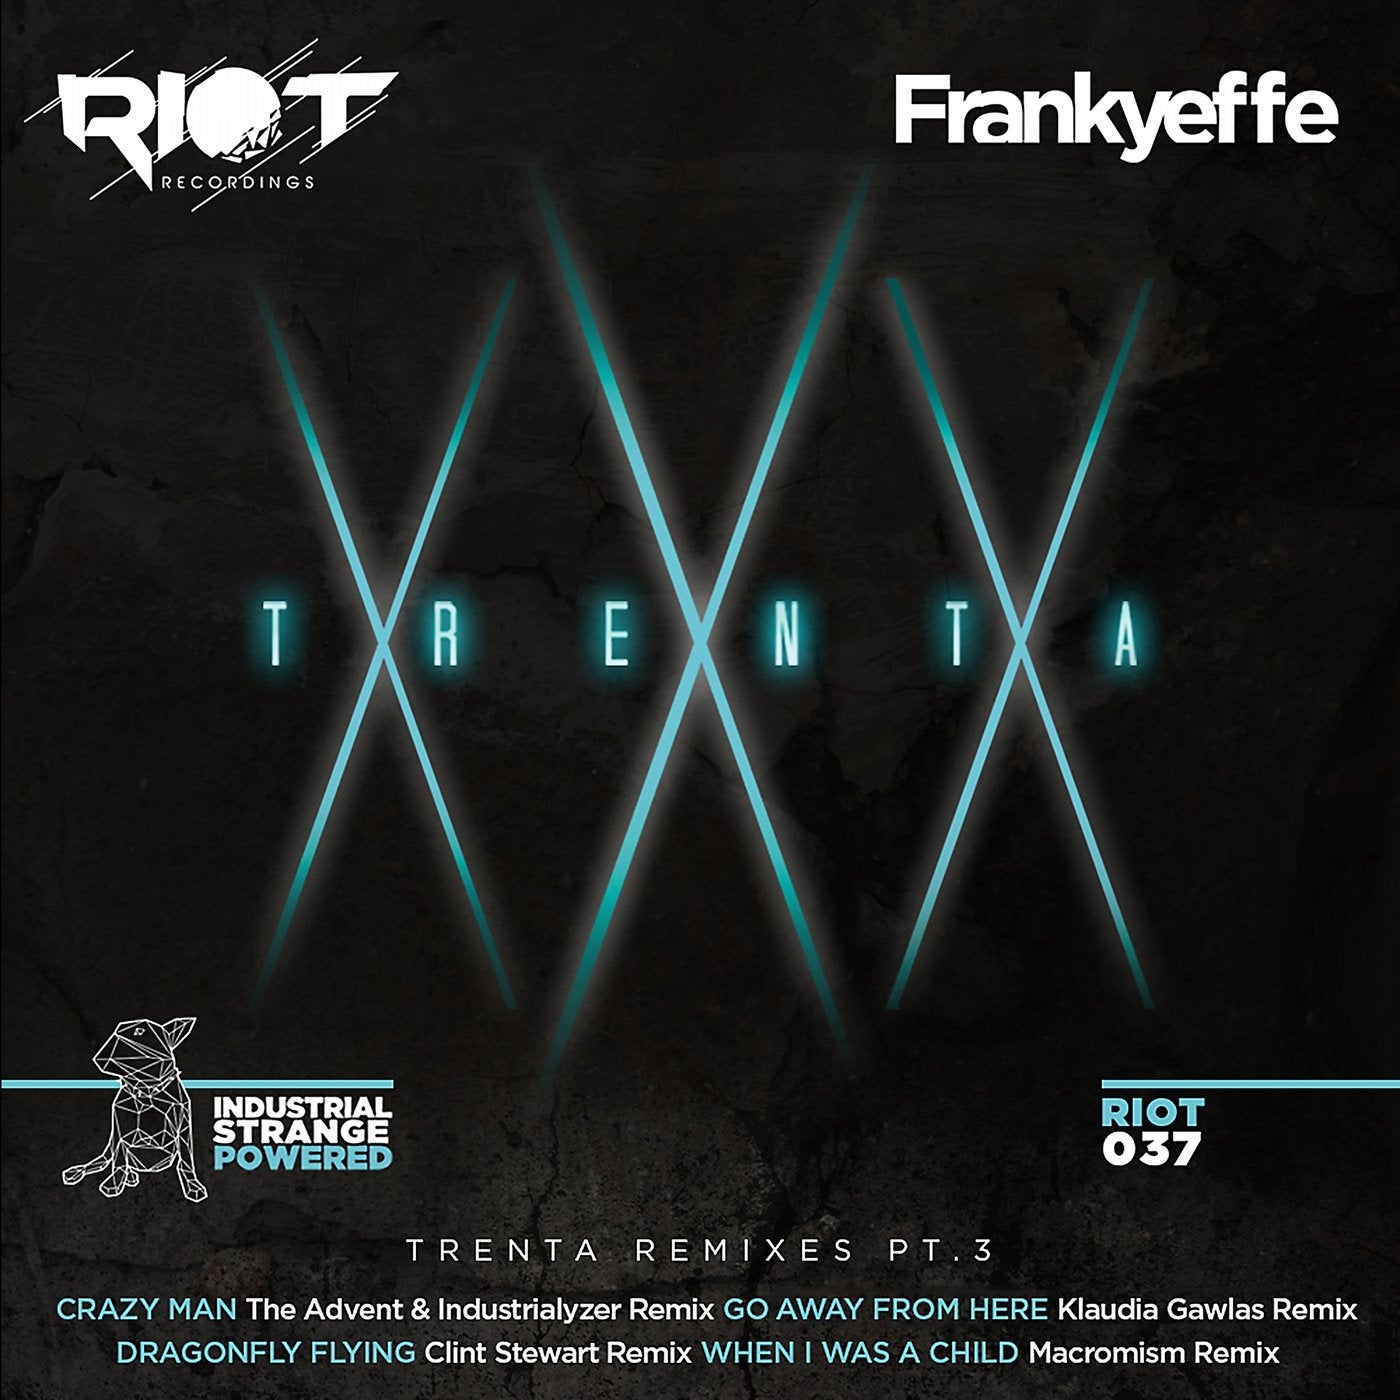 Trenta - Remixes, Pt. 3